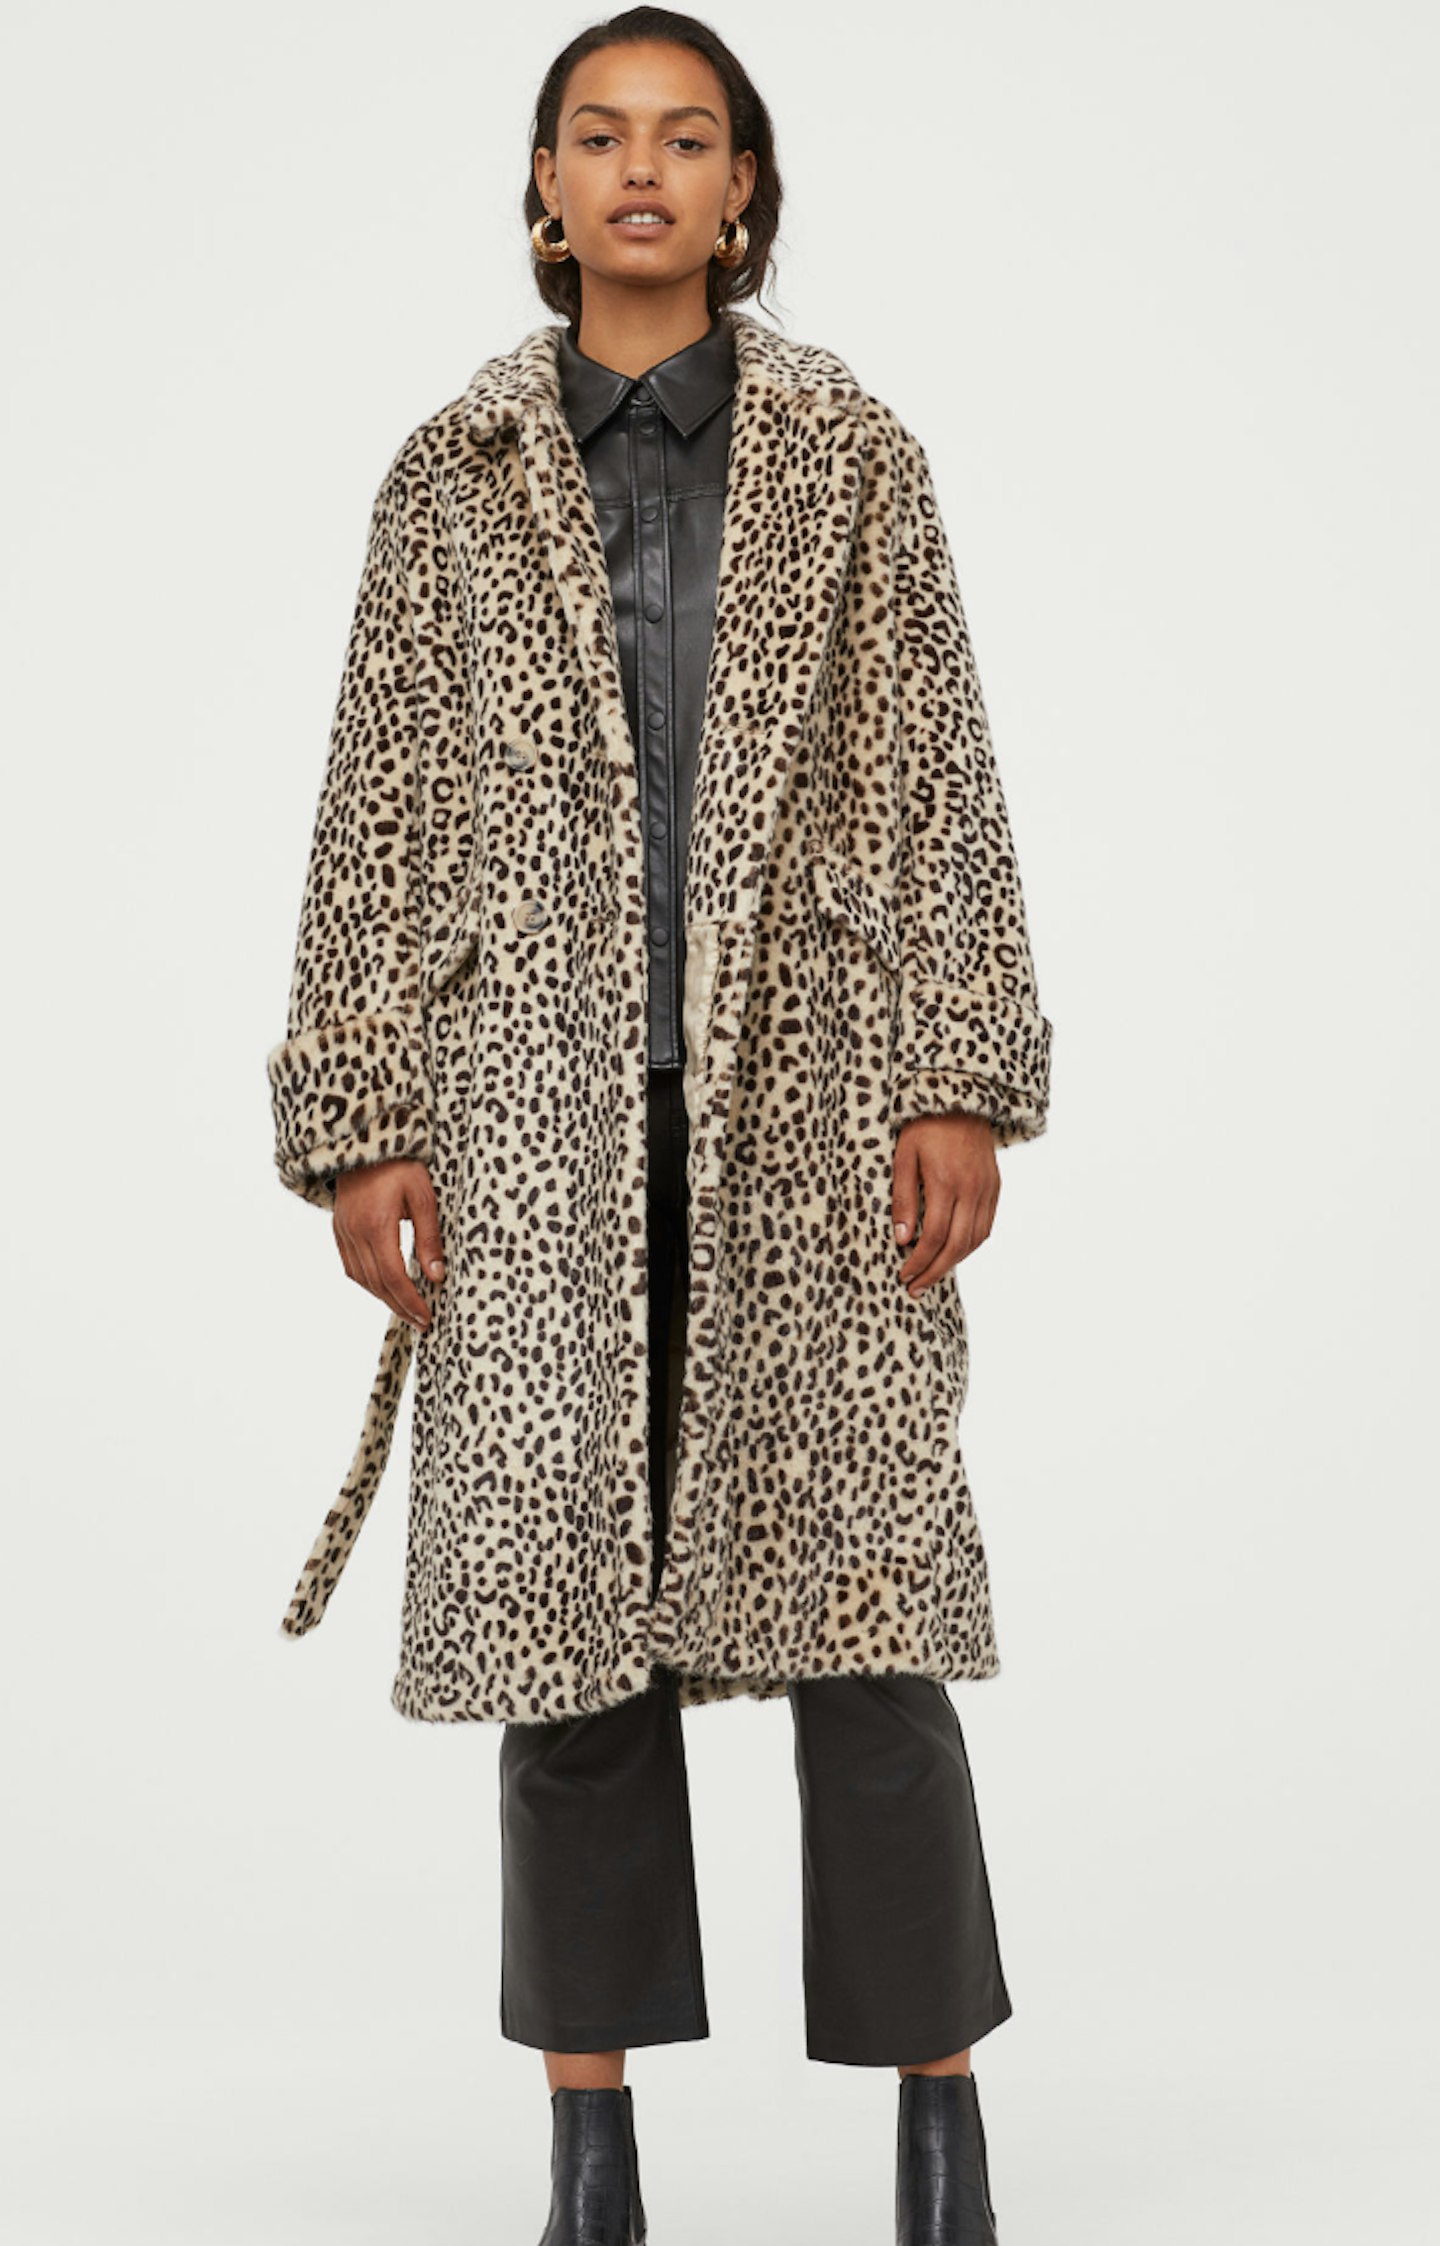 Faux Fur Animal Print Coat, £79.99